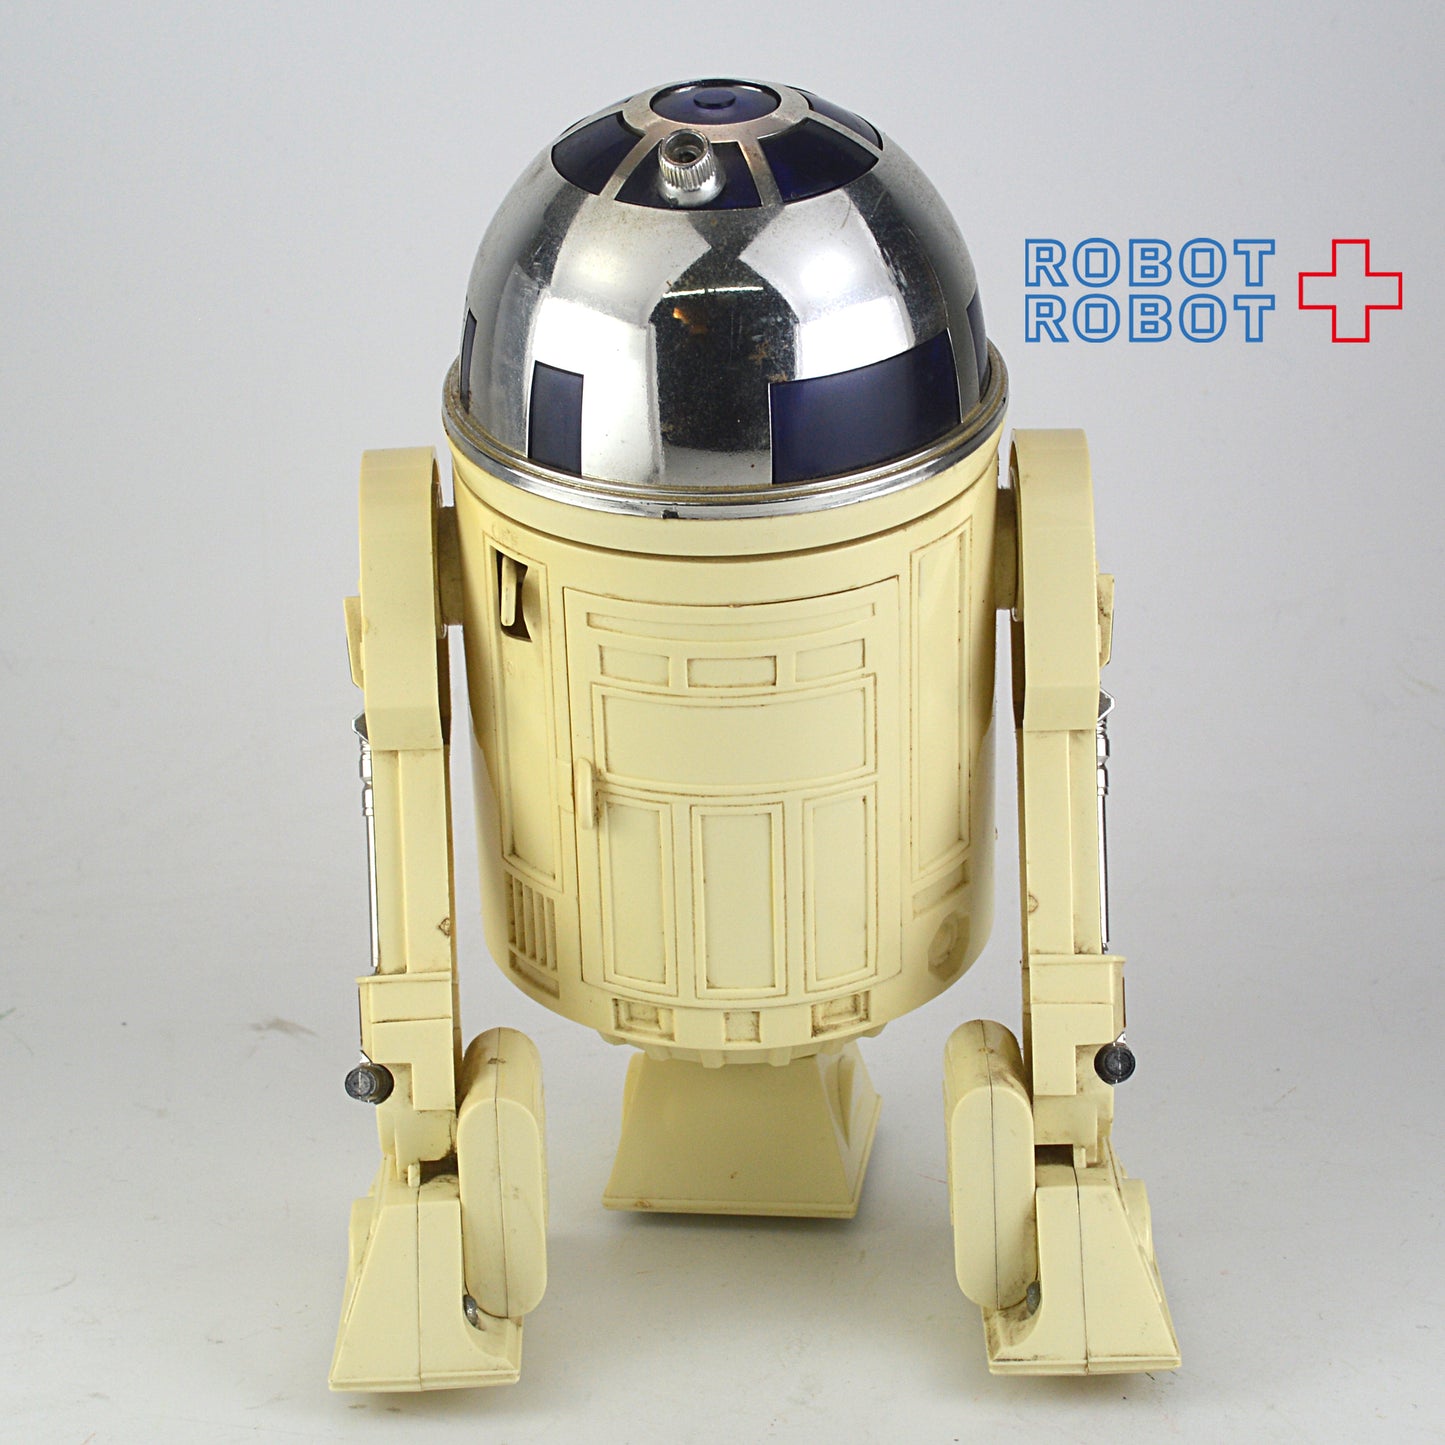 スター・ウォーズ タカラ R2-D2 ロボットウォーク 2020A